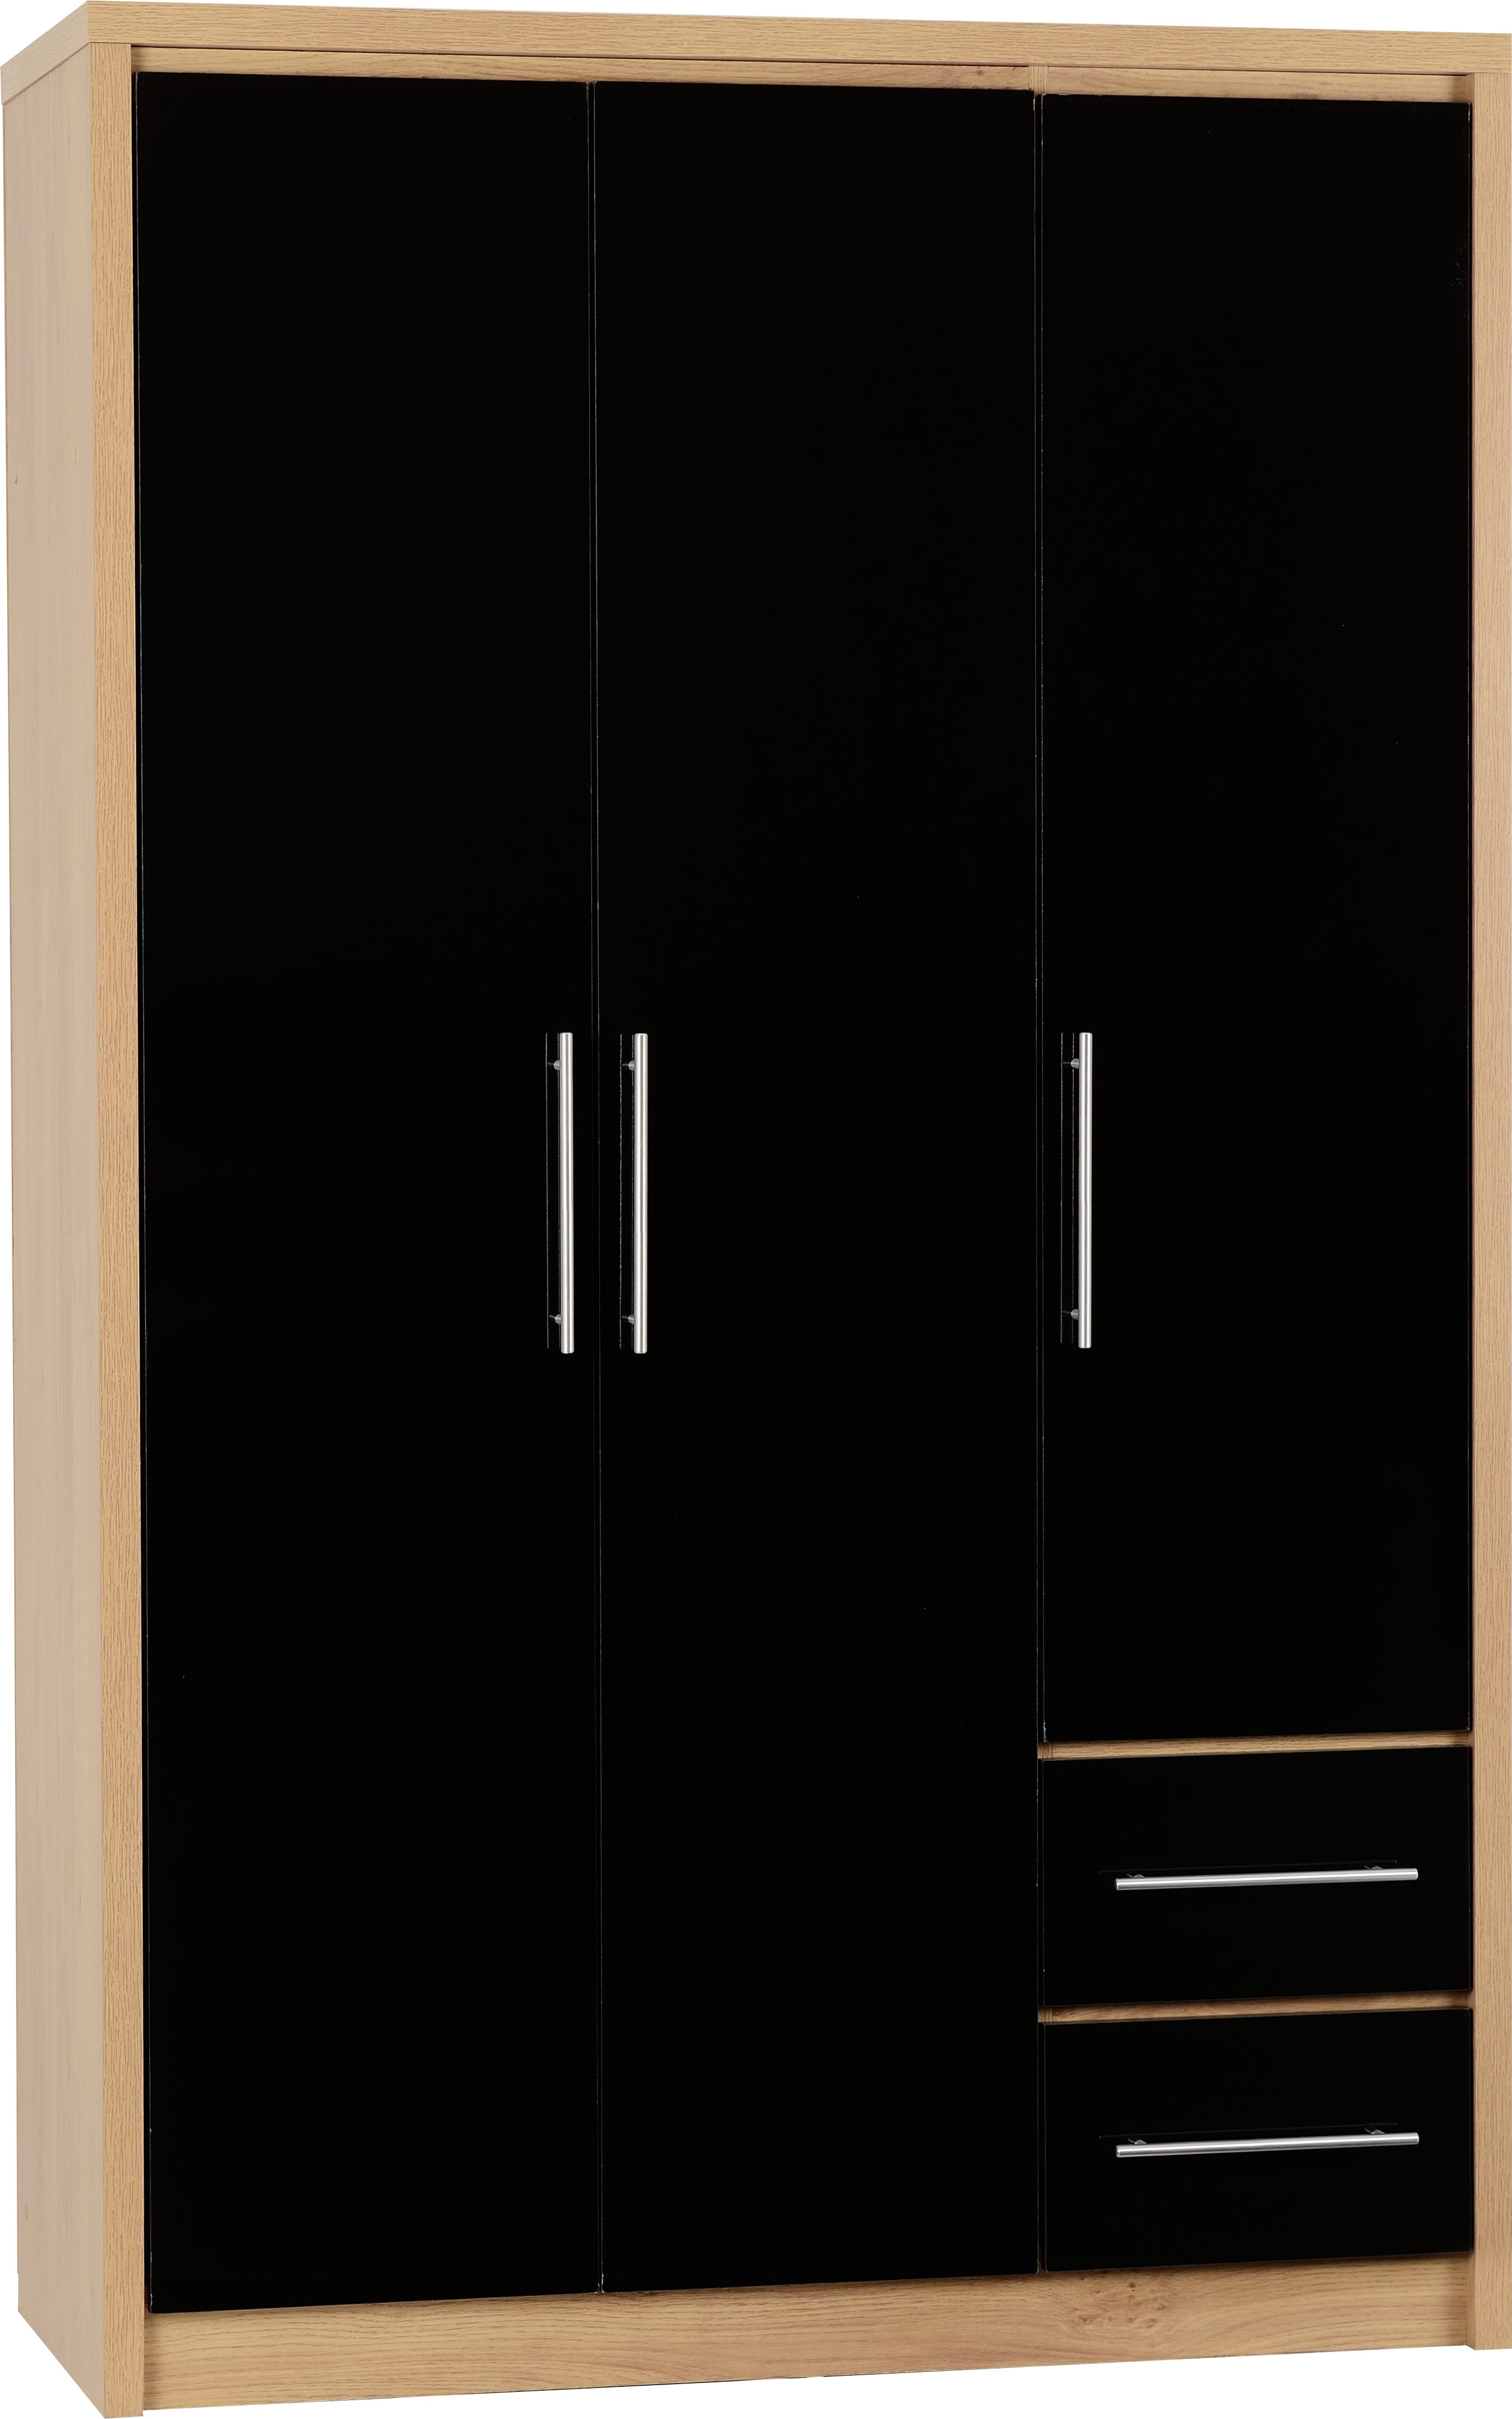 Seville 3 Door 2 Drawer Wardrobe Black High Gloss/Light Oak Effect Veneer